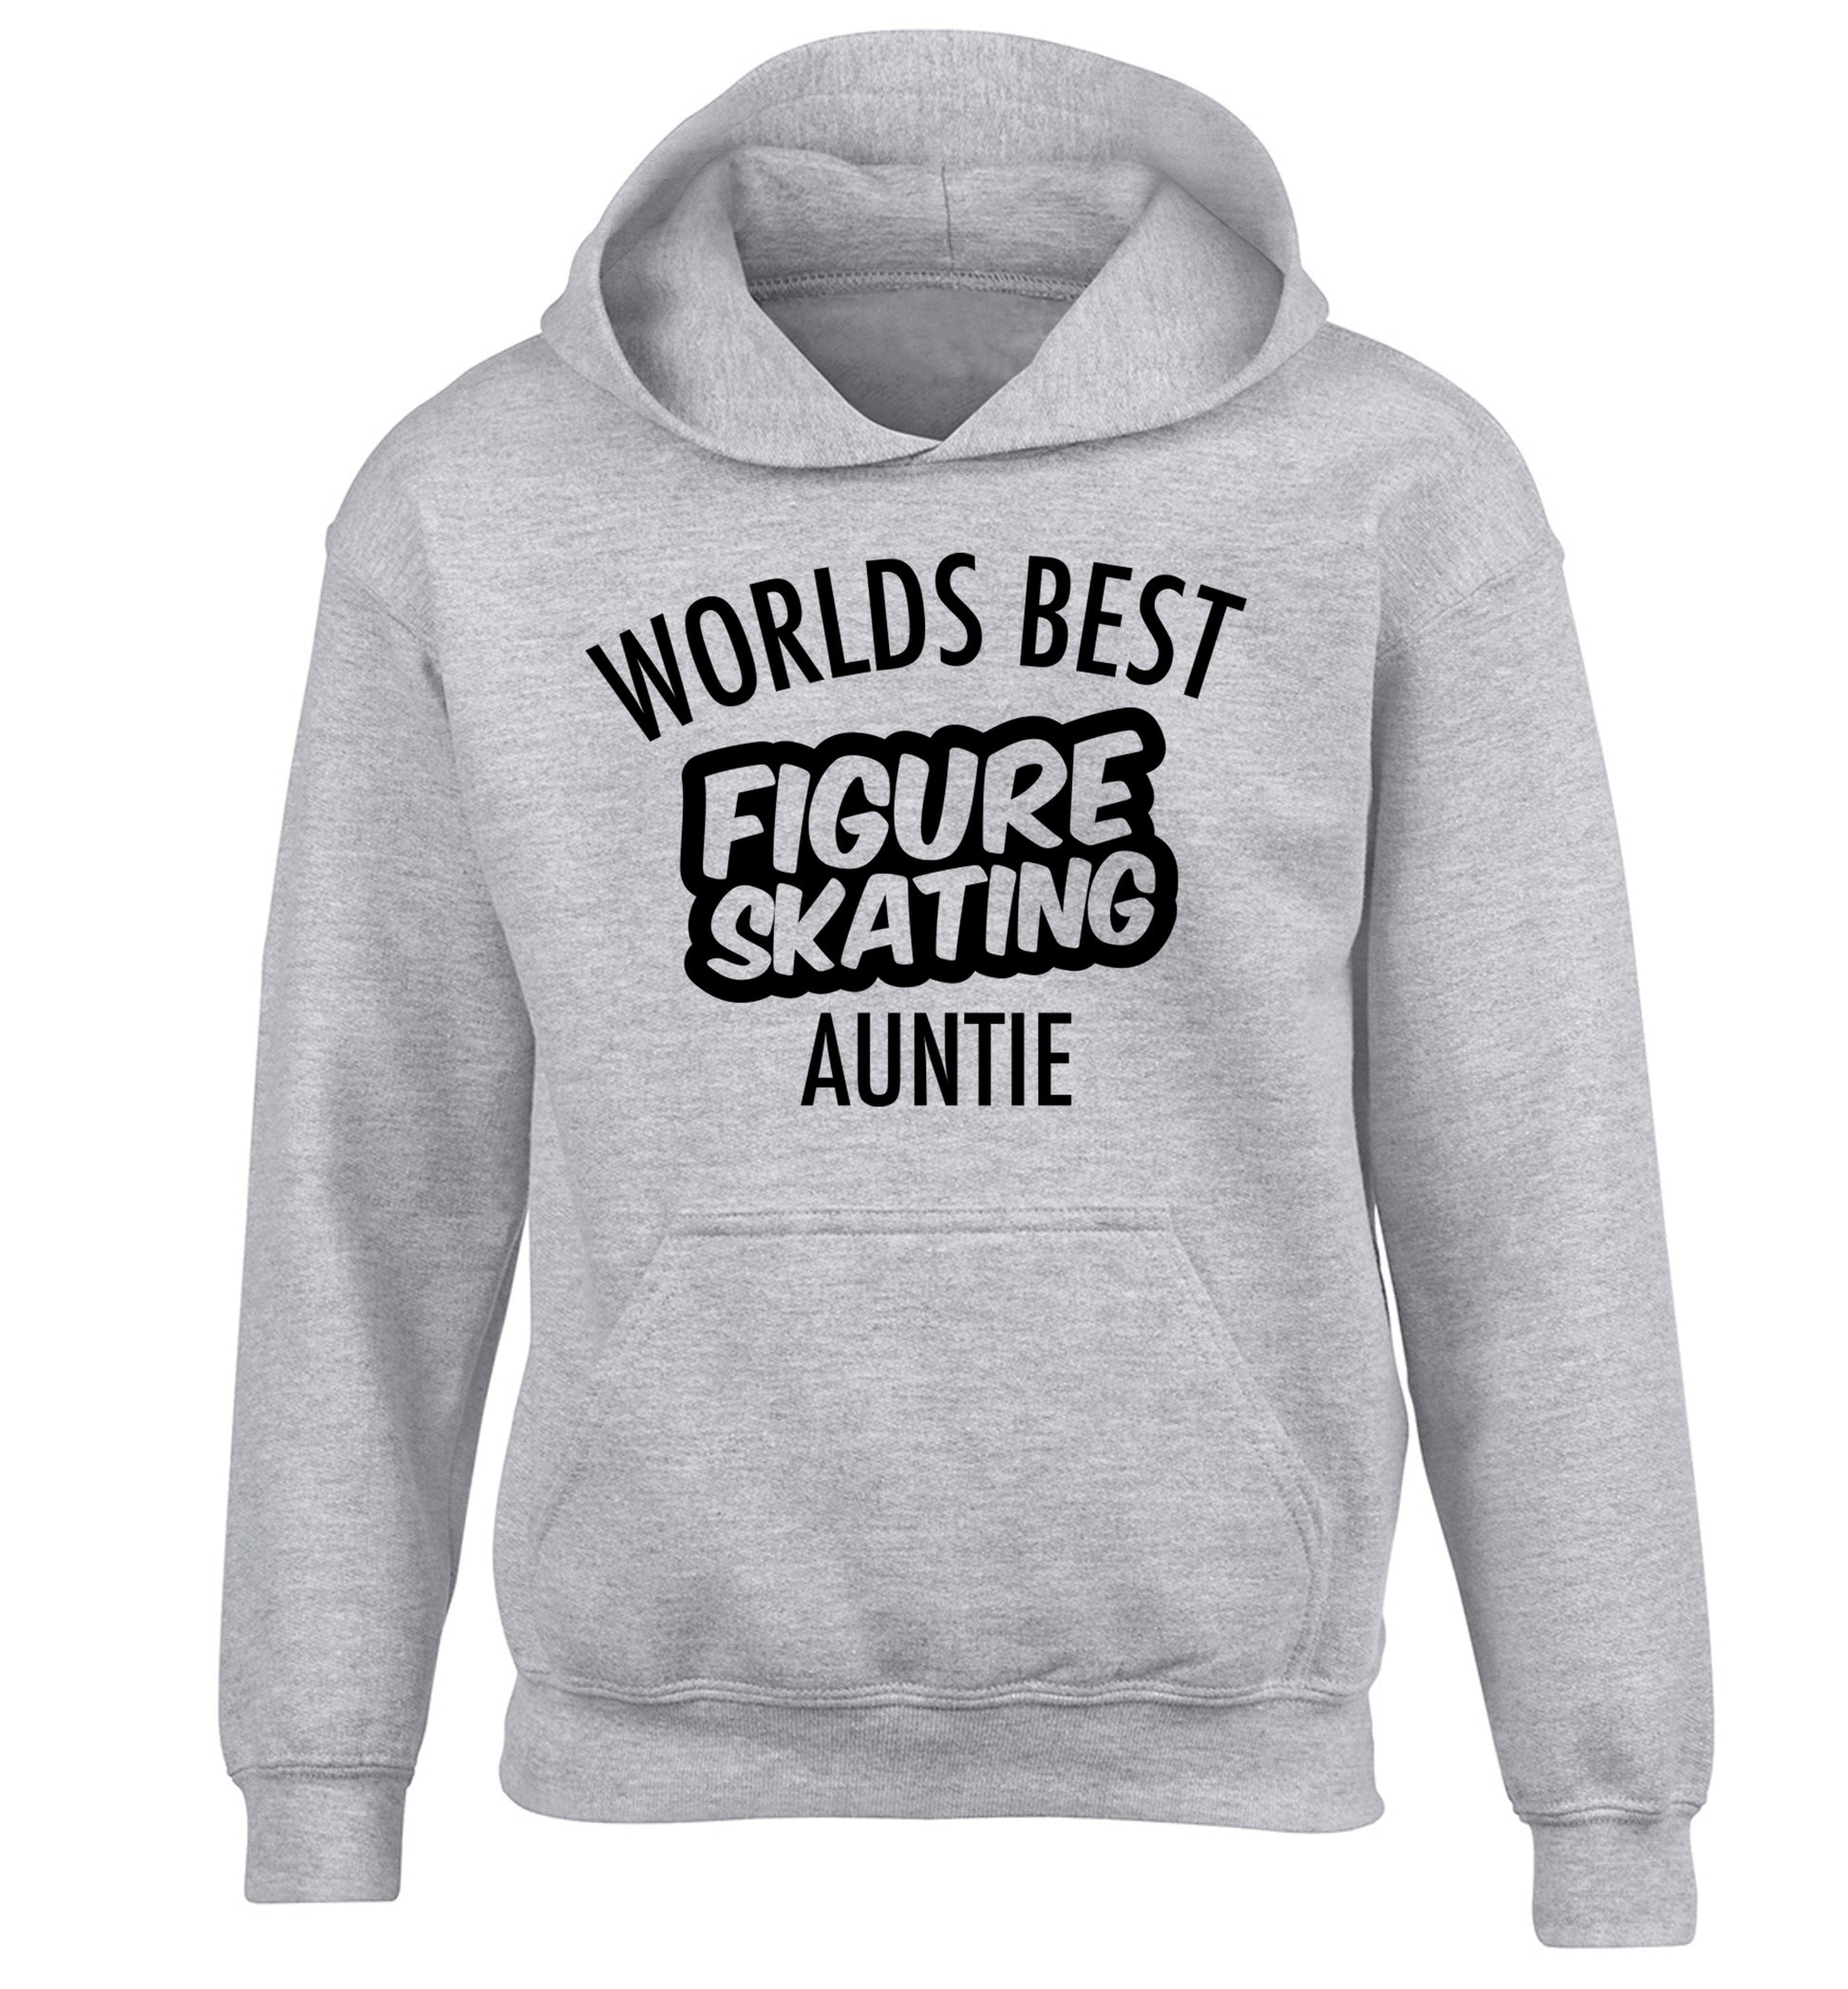 Worlds best figure skating auntie children's grey hoodie 12-14 Years